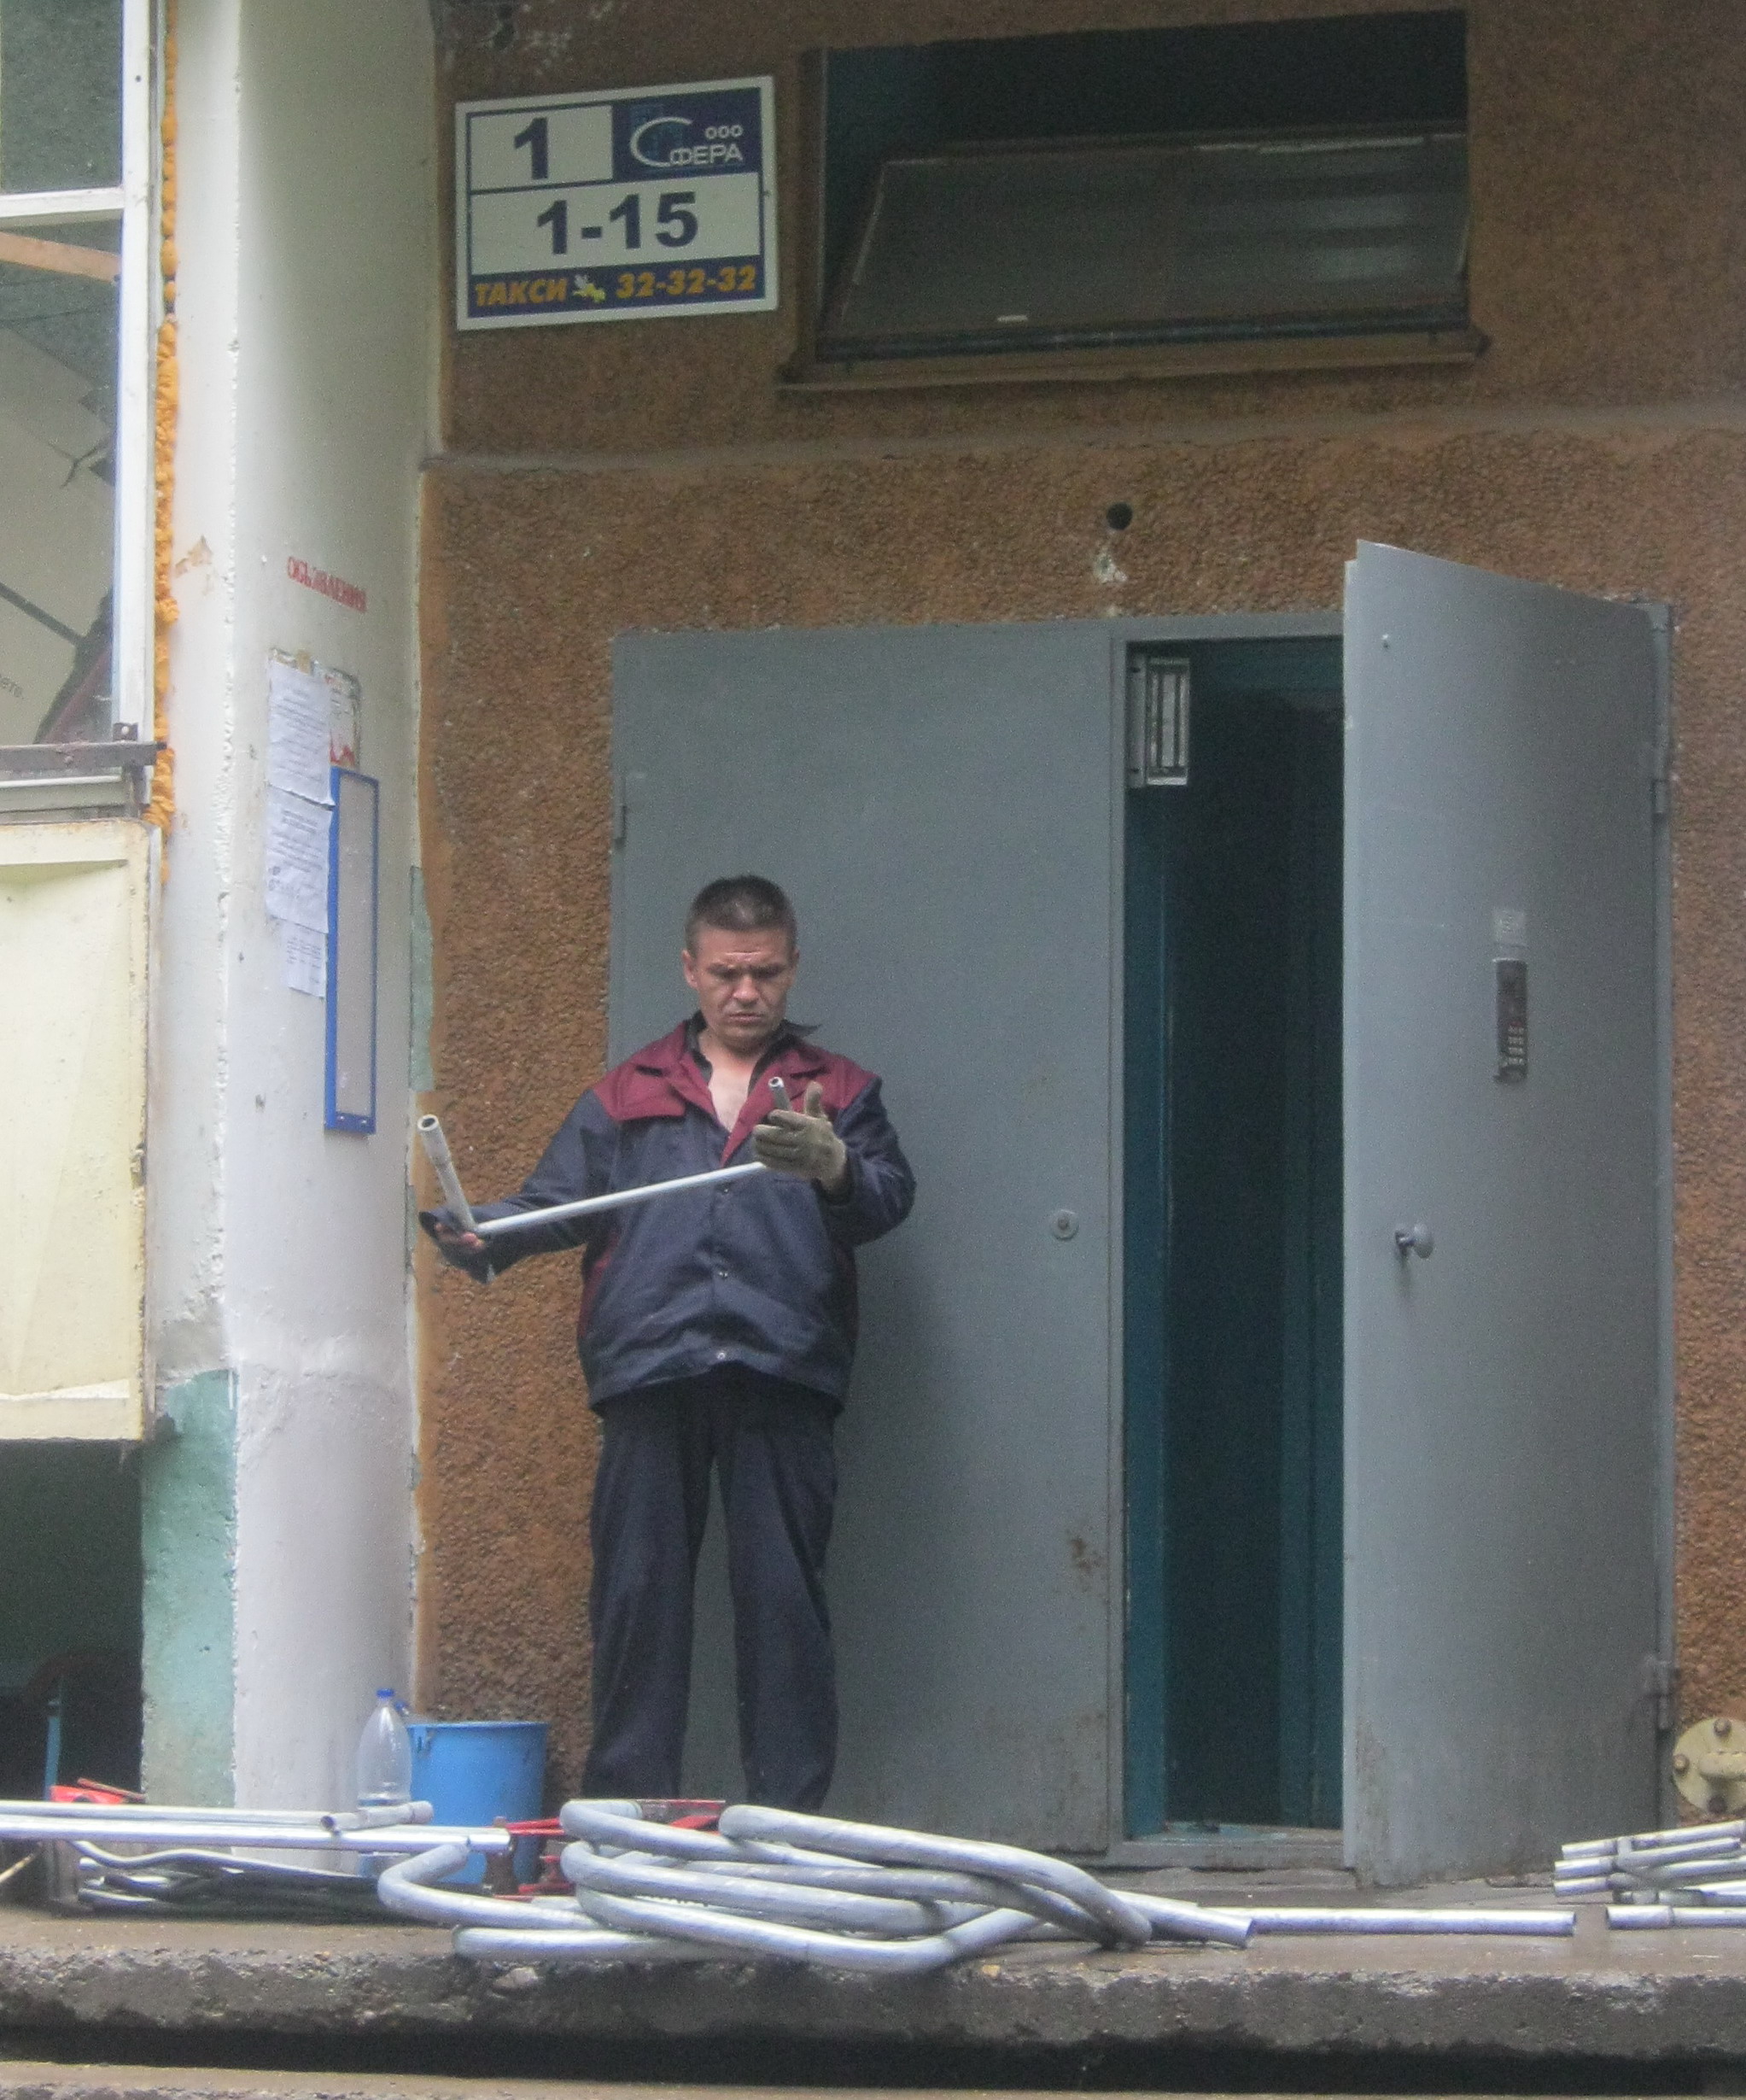 09:28 Капитальный ремонт домов в Московском районе г. Чебоксары: работой подрядчиков горожане довольны  